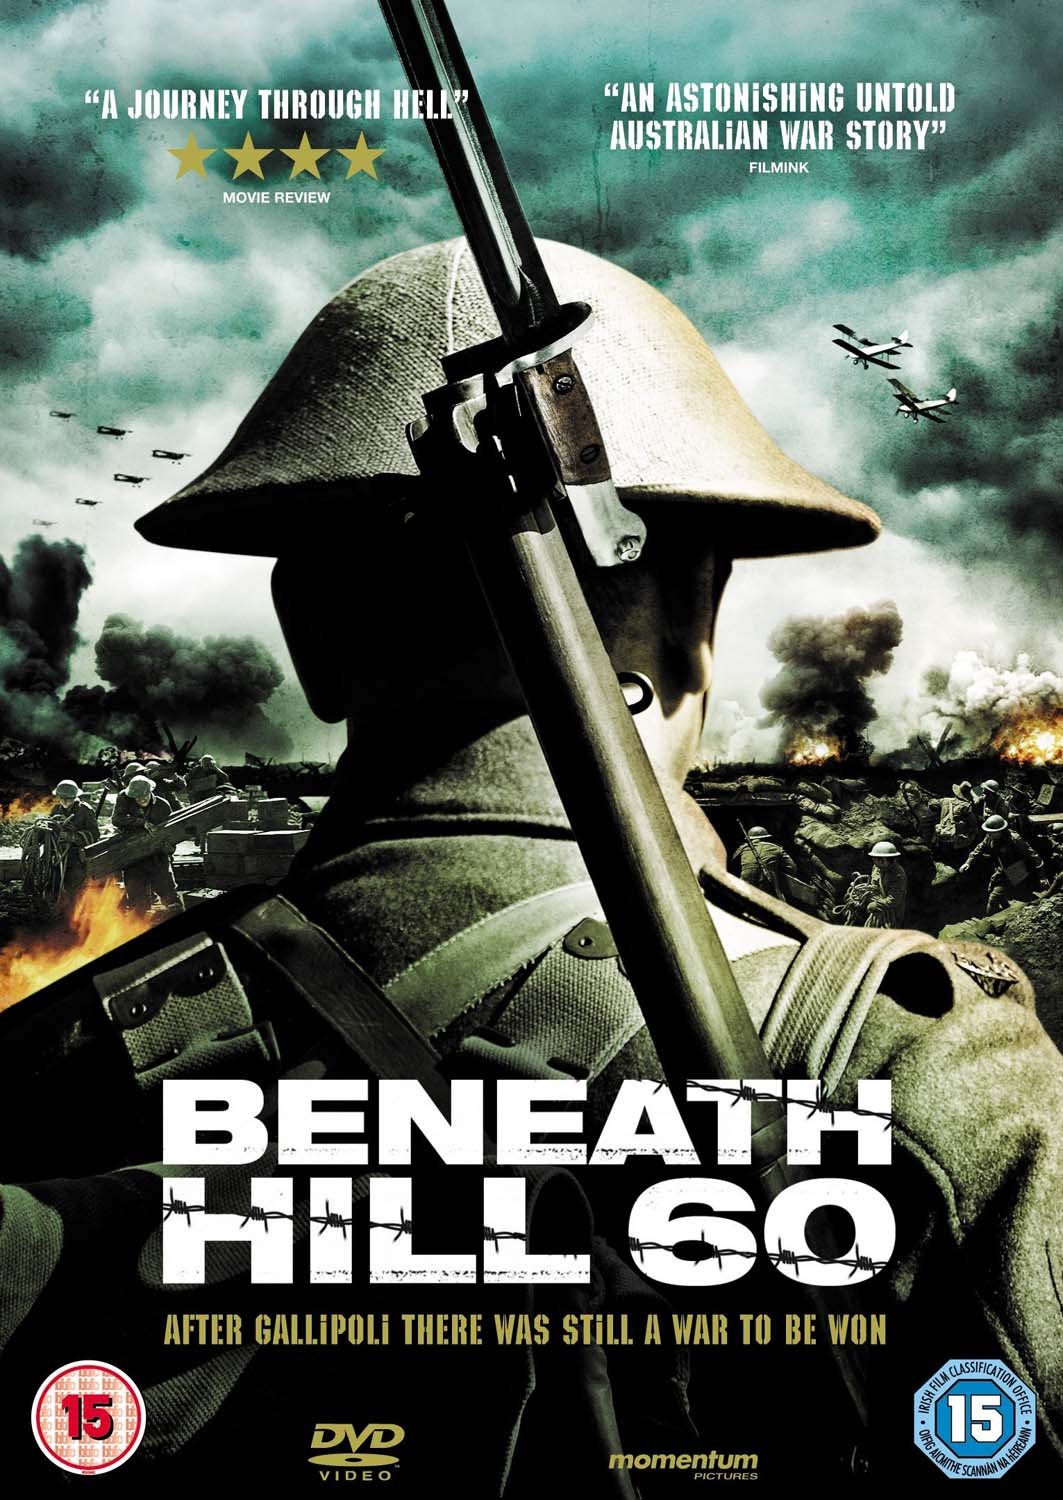 Stiahni si Filmy CZ/SK dabing Bitva o Hill 60 / Beneath Hill 60 (2010)(CZ)[1080p] = CSFD 76%